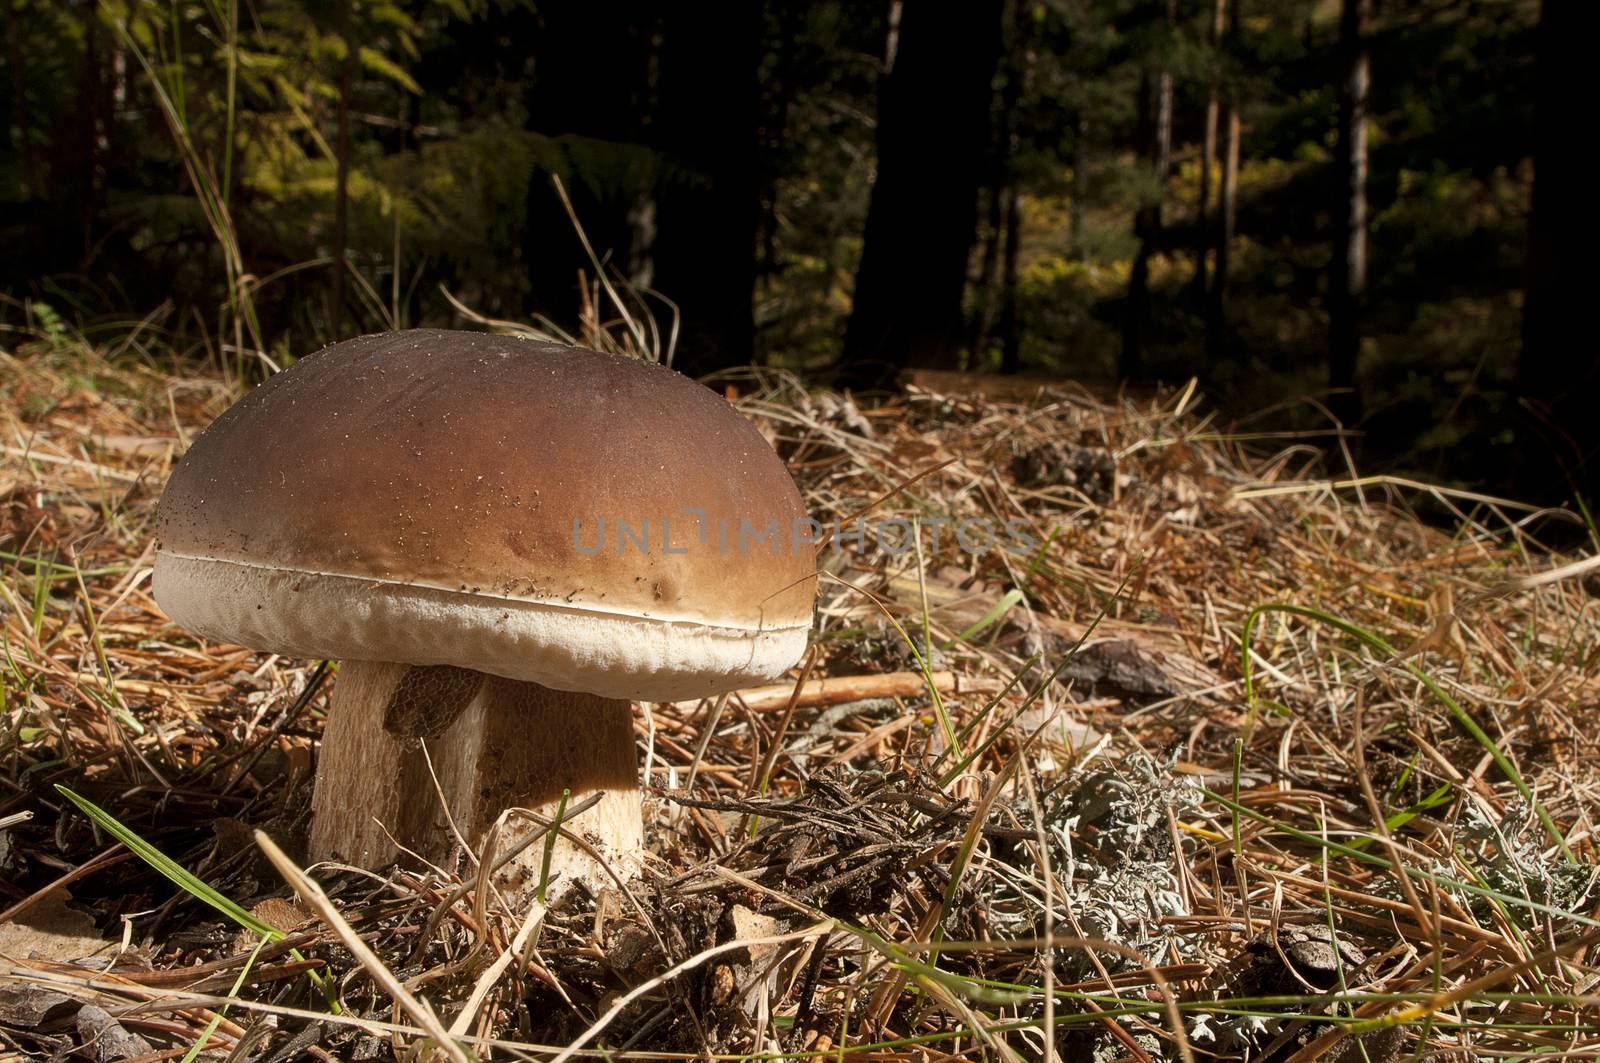 Mushroom, boletus edulis, in pine forest